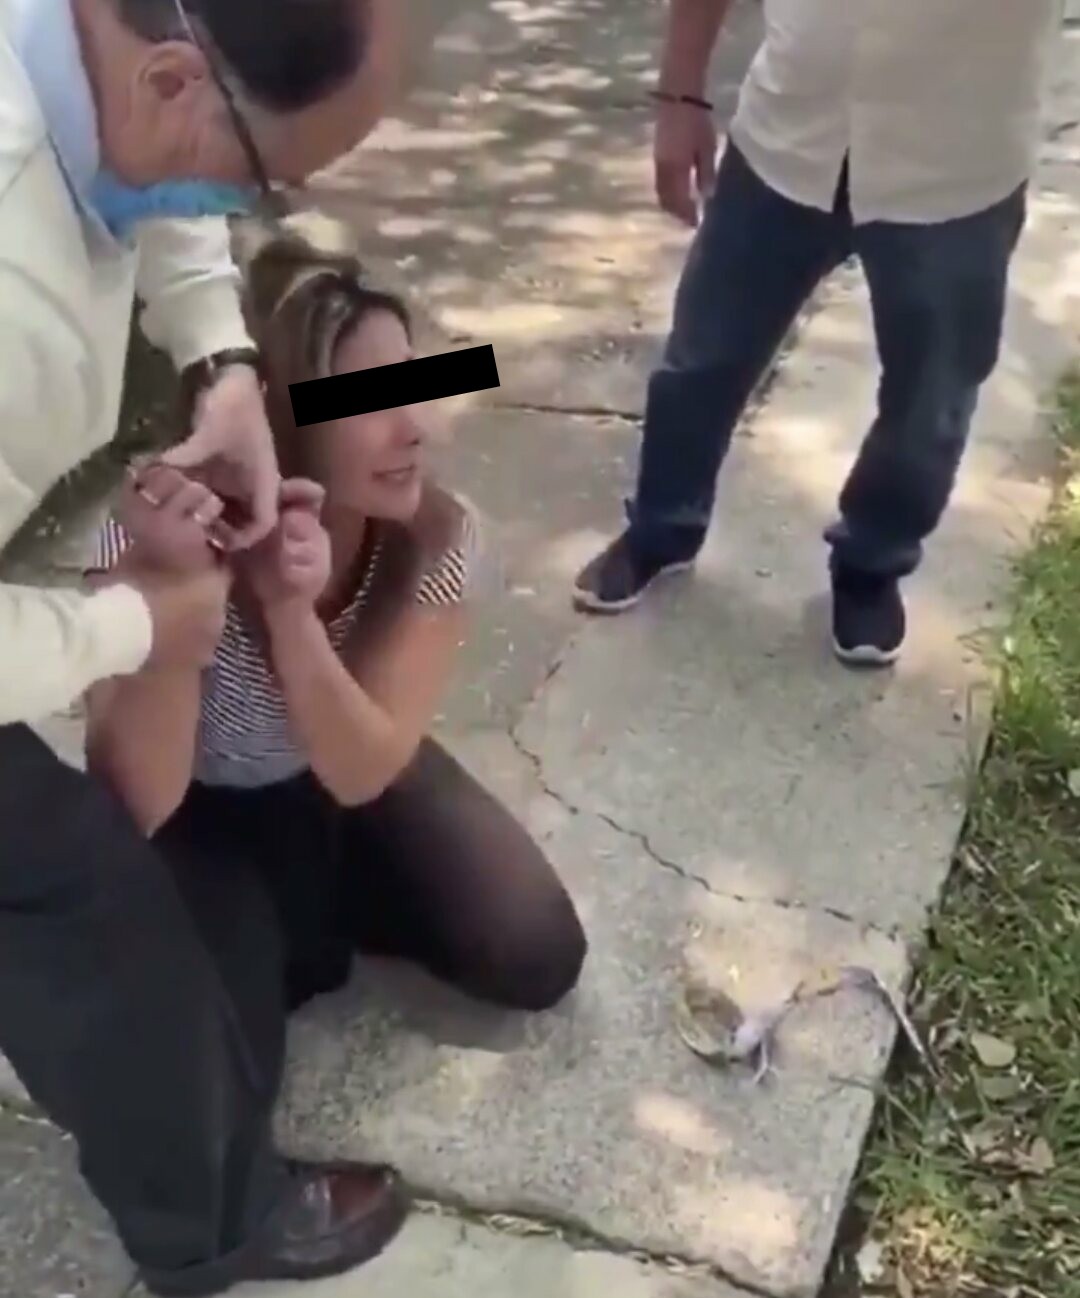 Captan a notario violentando a su esposa en calles de Naucalpan #regionmx